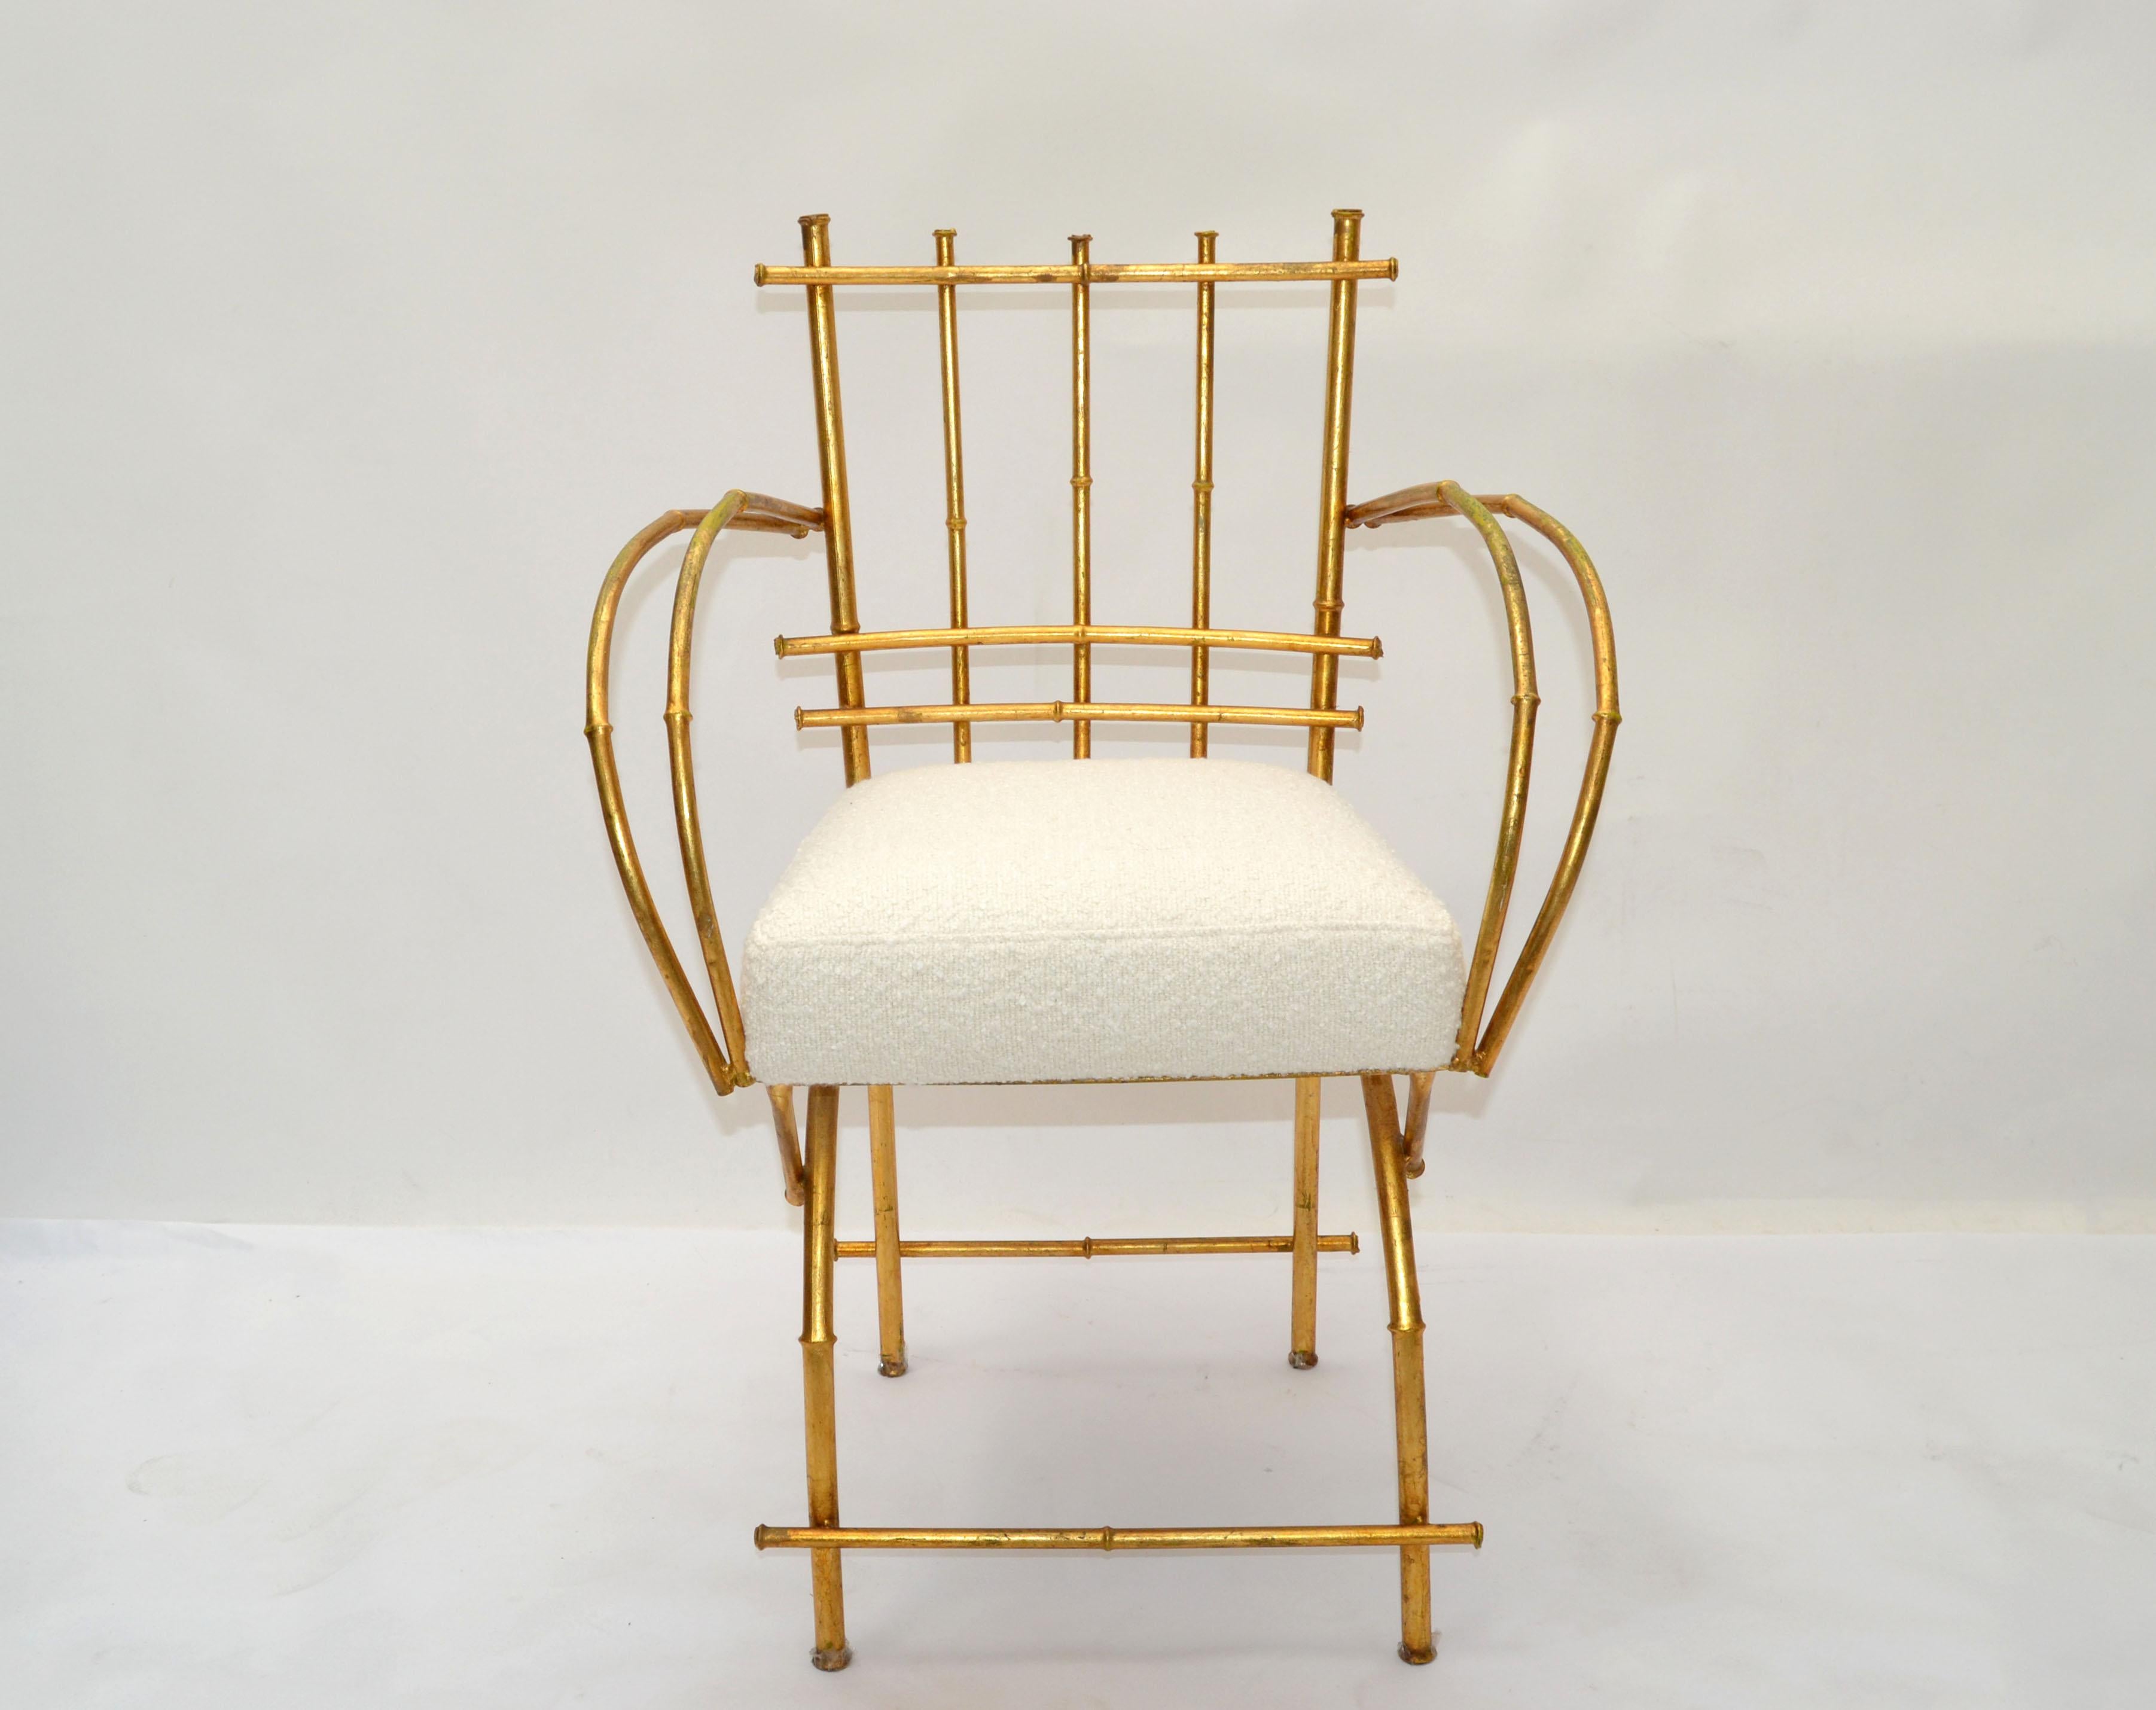 Wir bieten eine faux Bambus-Metall-Sessel oder Eitelkeit Stuhl in Gold-Finish skulpturalen gefertigt und hat eine neue gepolsterte Sitzkissen in einer Creme Farbe Bouclé-Stoff.
Made in America in den 1950er Jahren.
Gebrauchsfertig mit einigen